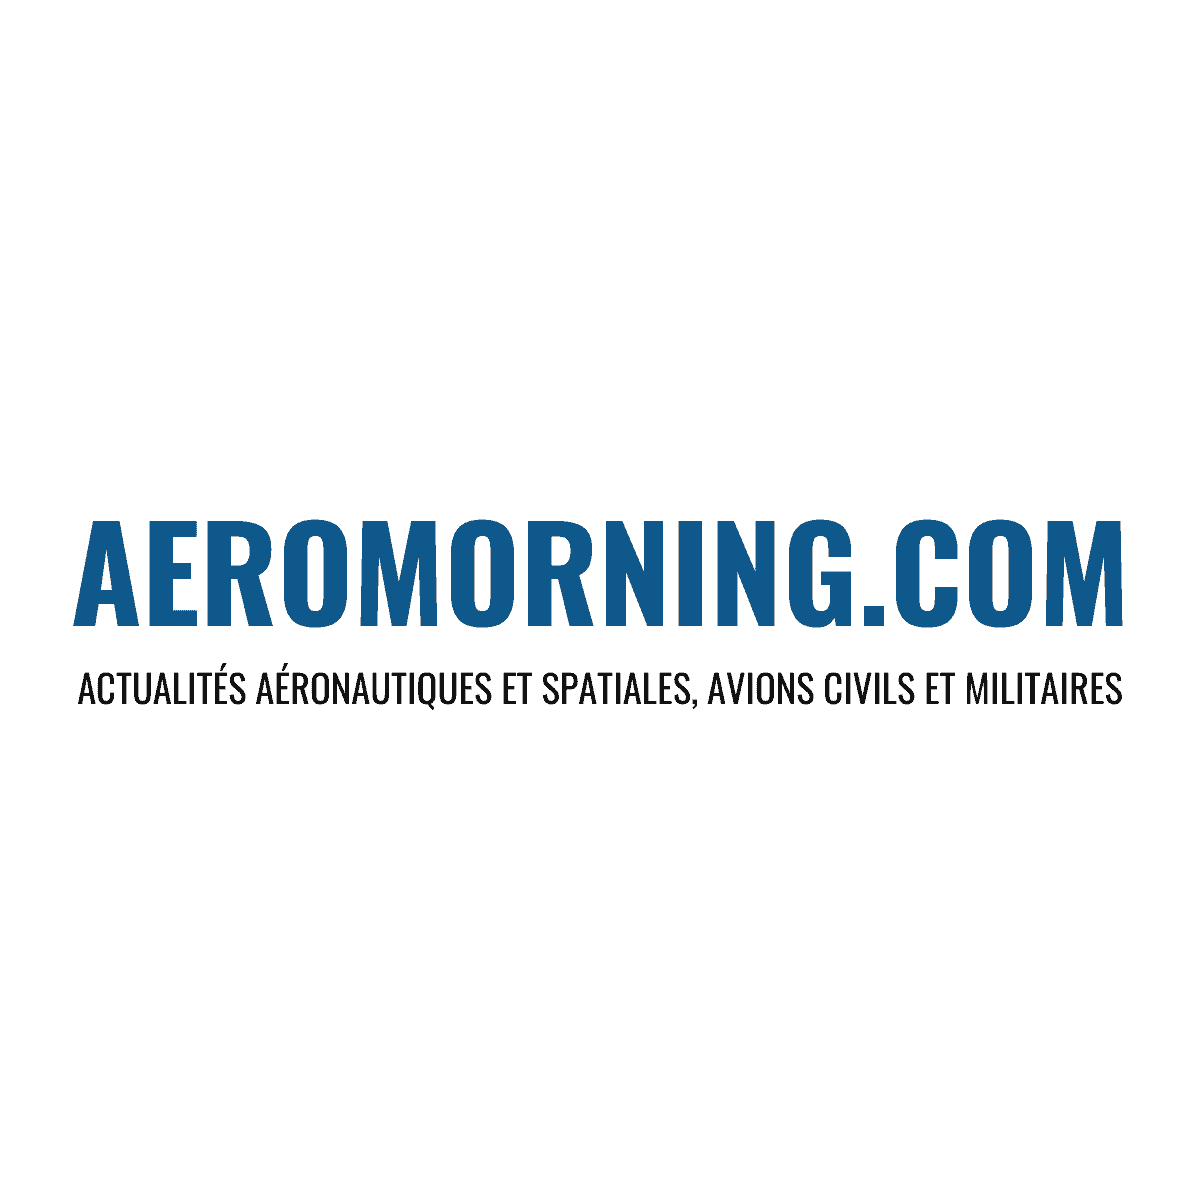 La média aeromorning.com parle de corso magenta et sa solution CorsoPatch Aircraft